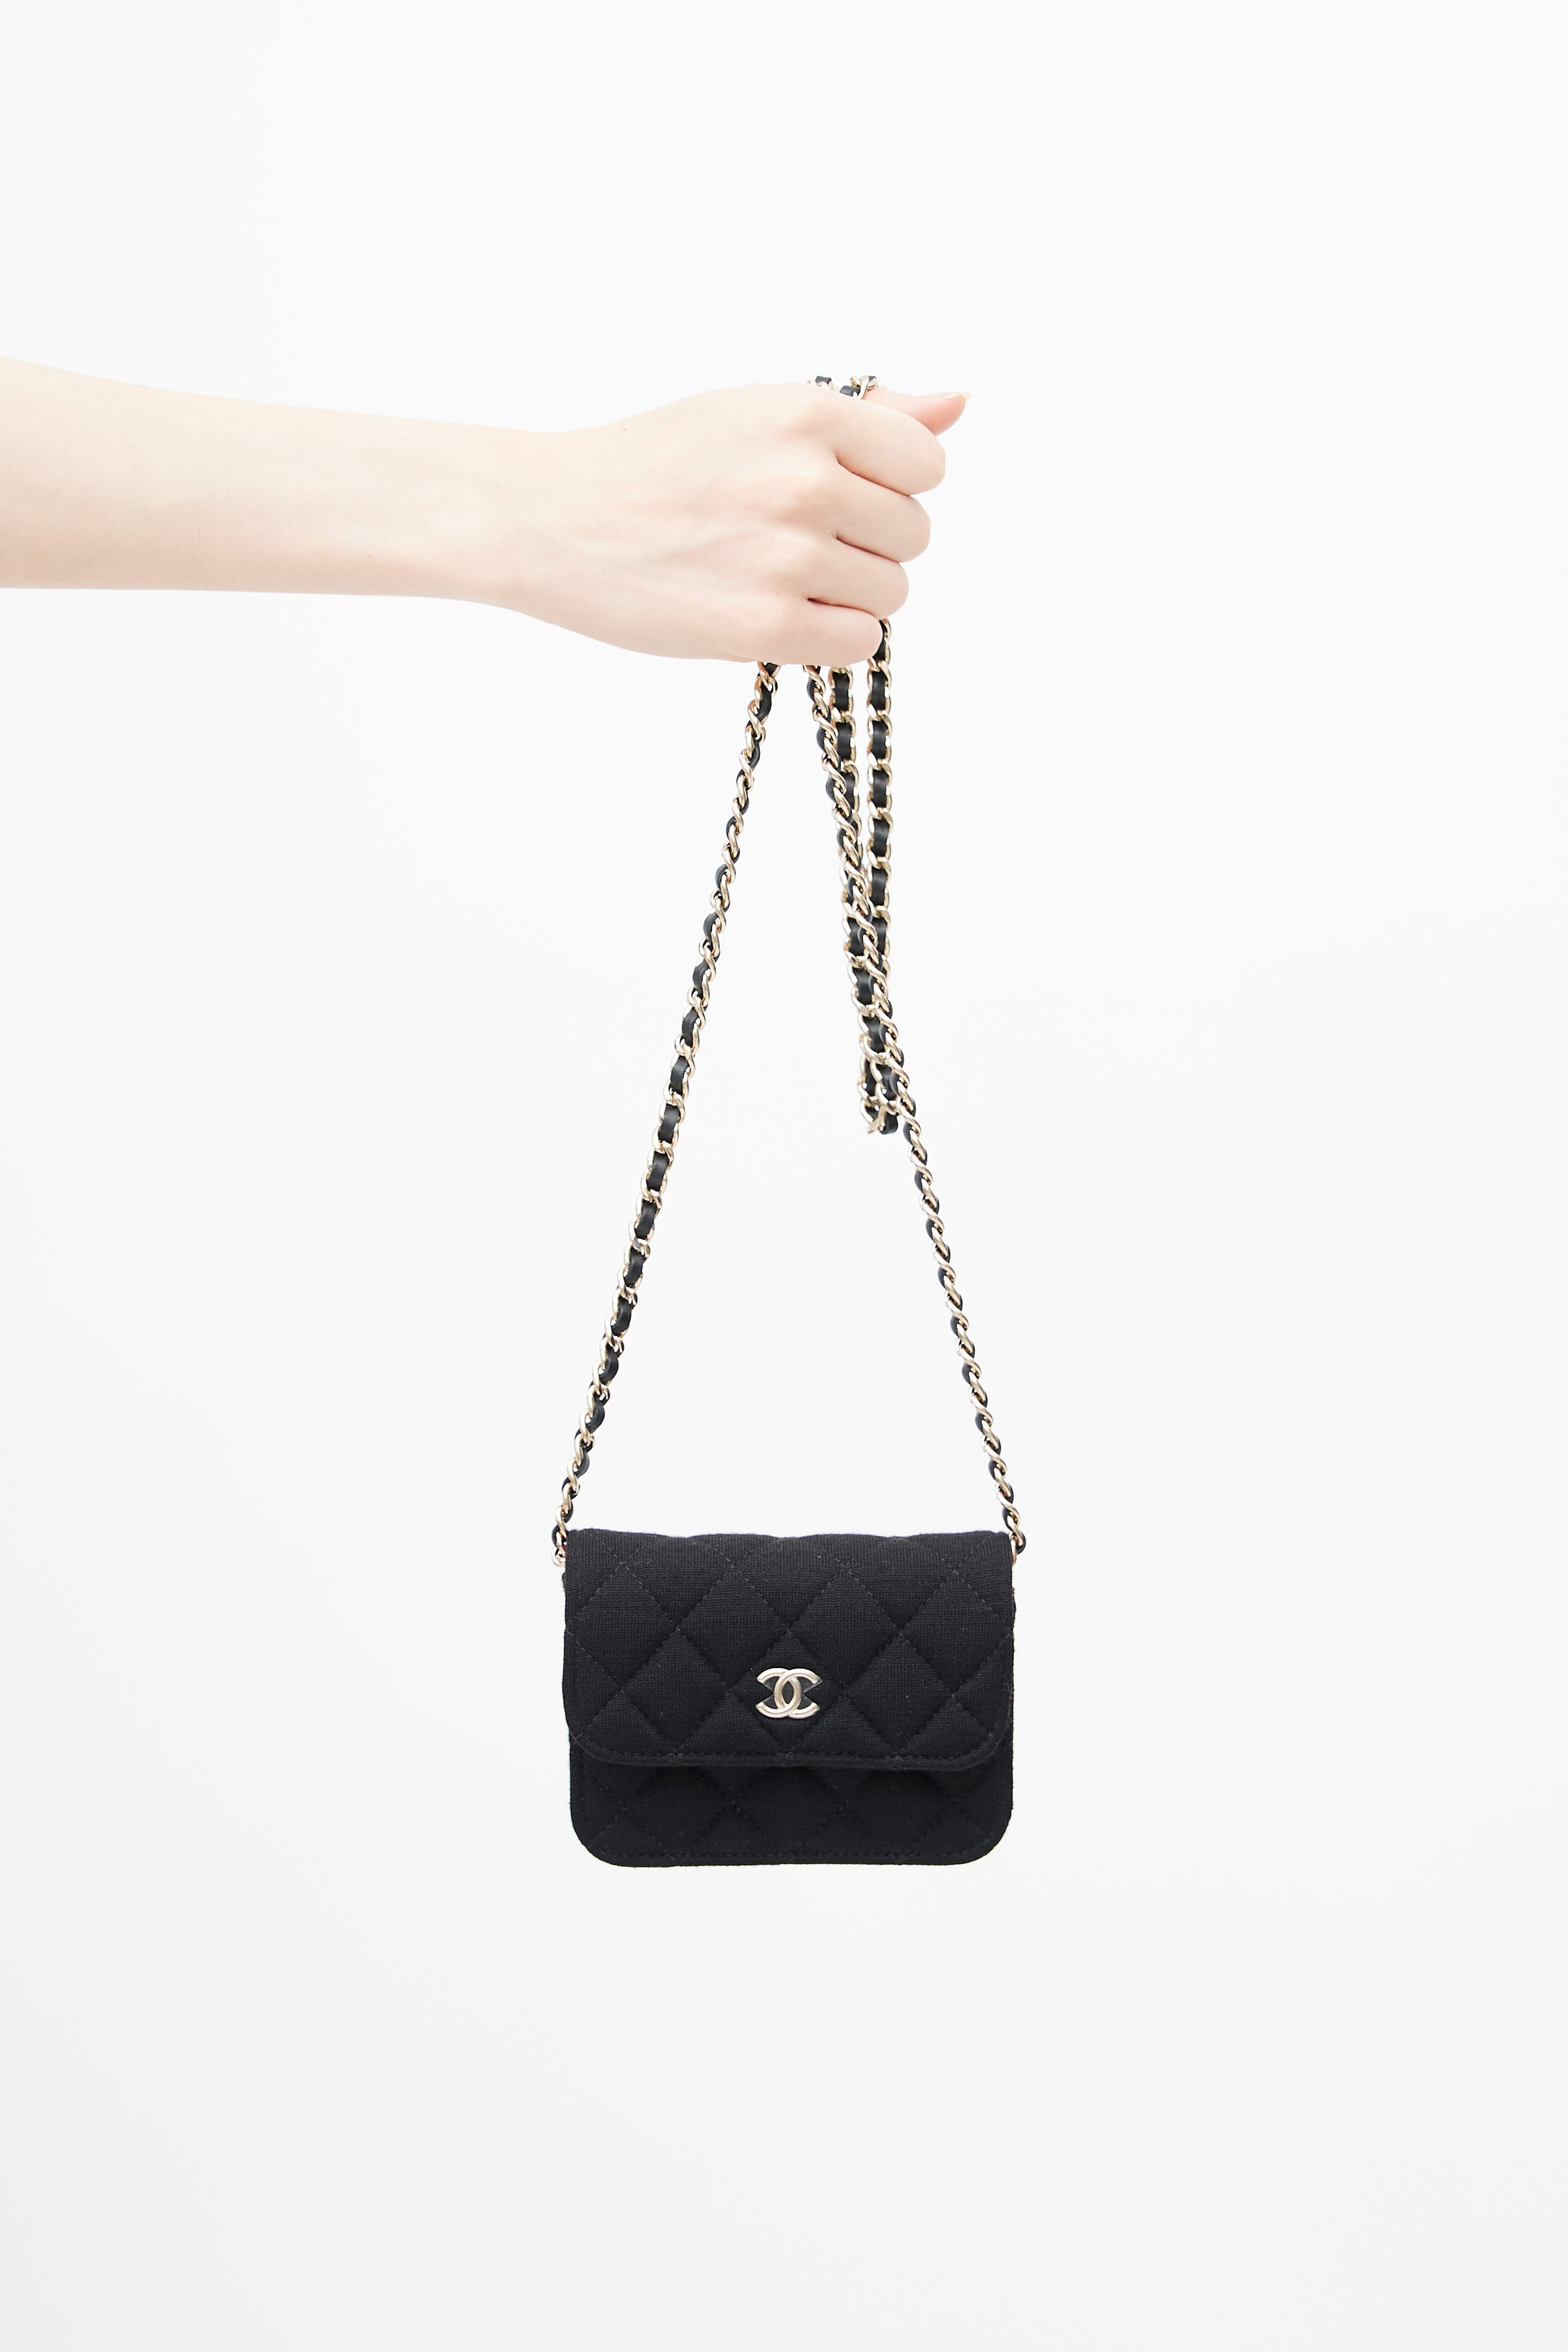 Chanel Timeless Shoulder bag 402075